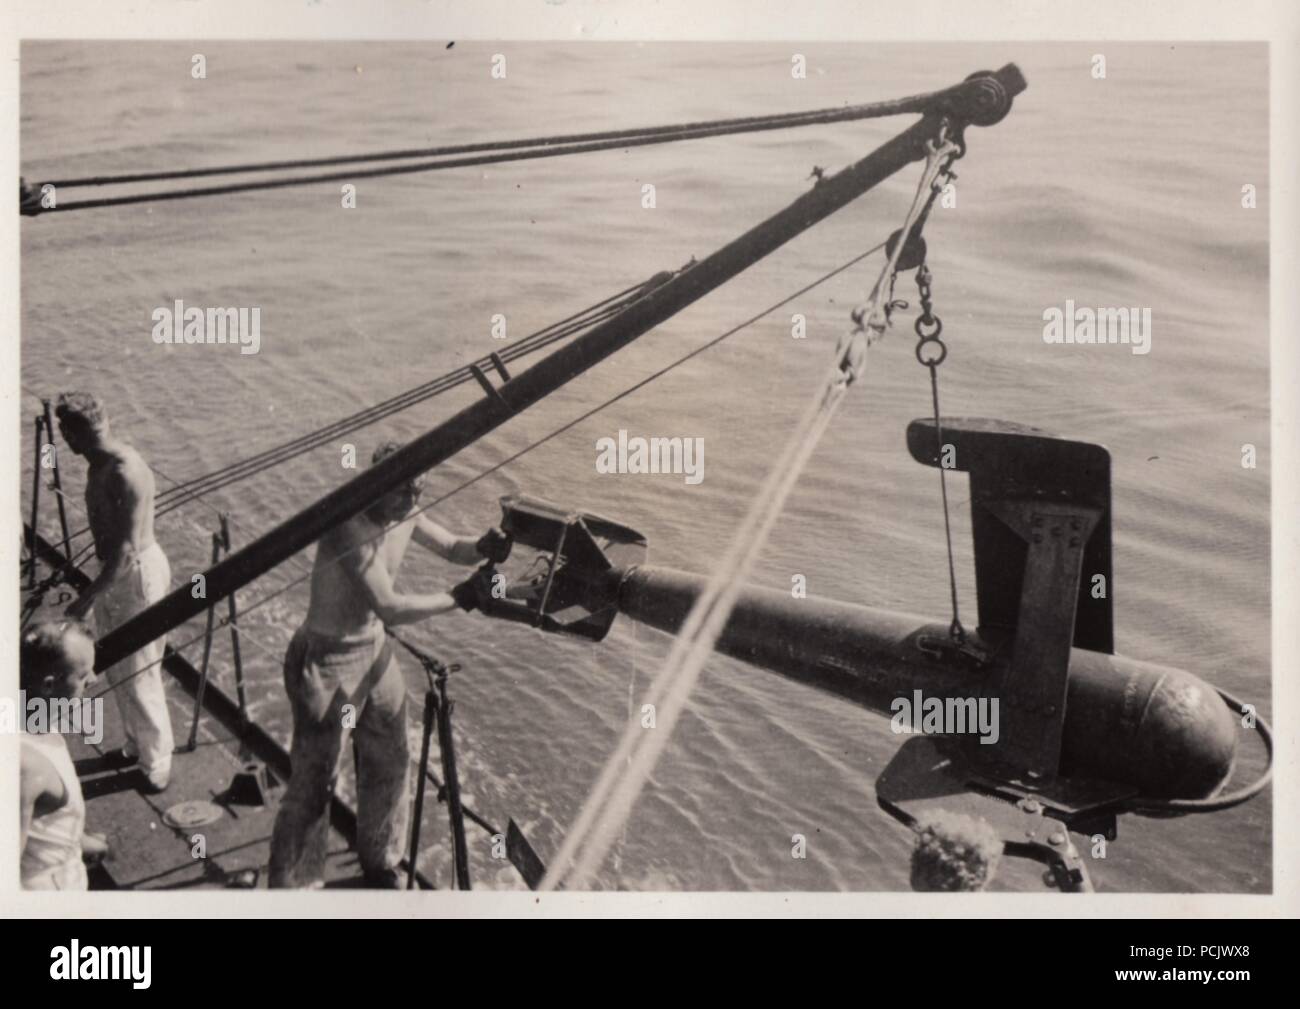 Droit de l'album photo de Oberfänrich Wilhelm Gaul - le déploiement d'équipements de déminage de l'Allemand Torpedoboot Leopard (Torpedo Boat Leopard) en 1937, pendant la guerre civile espagnole. Banque D'Images